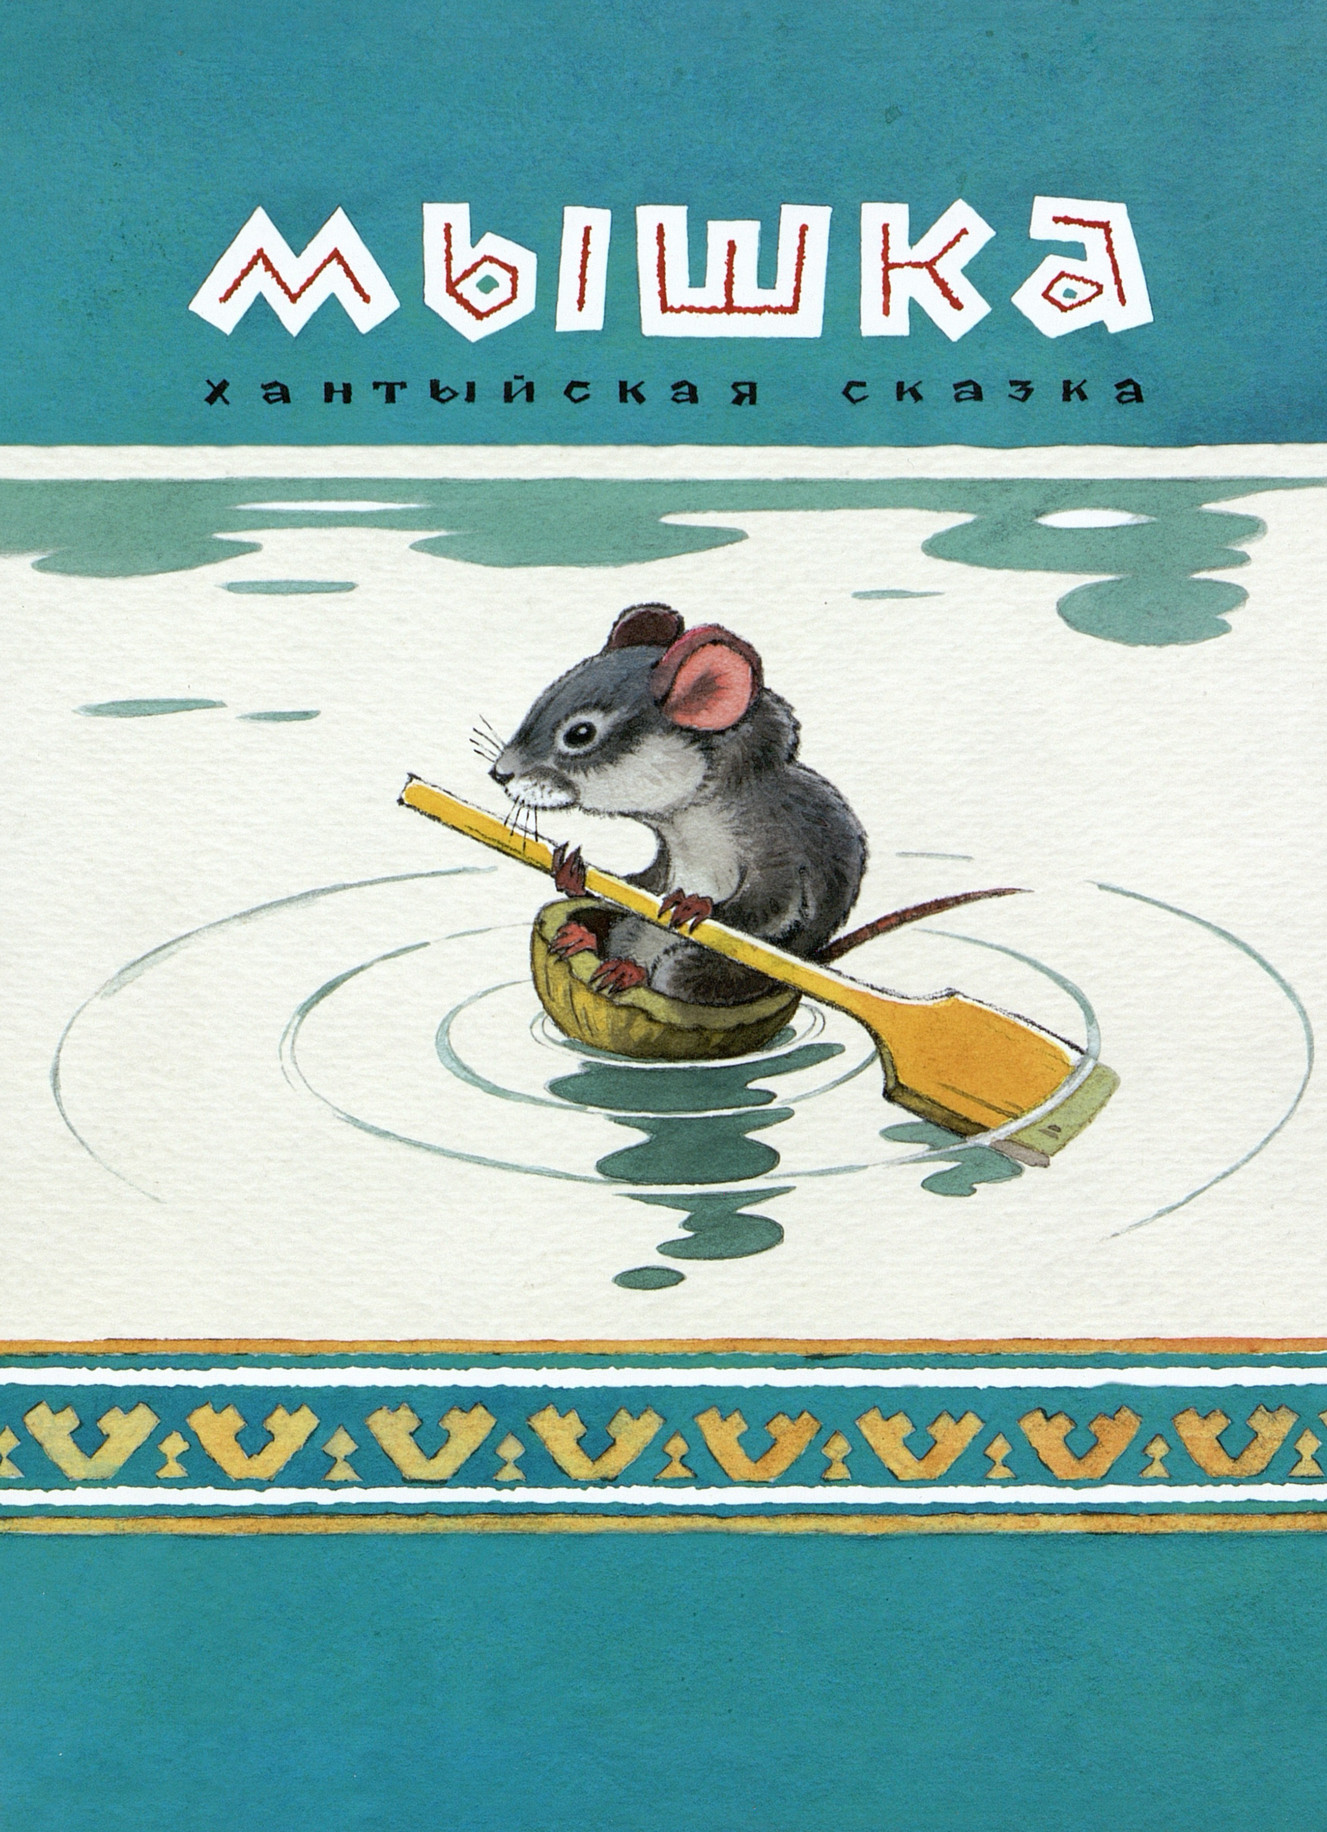  Мышка: хантыйская сказка